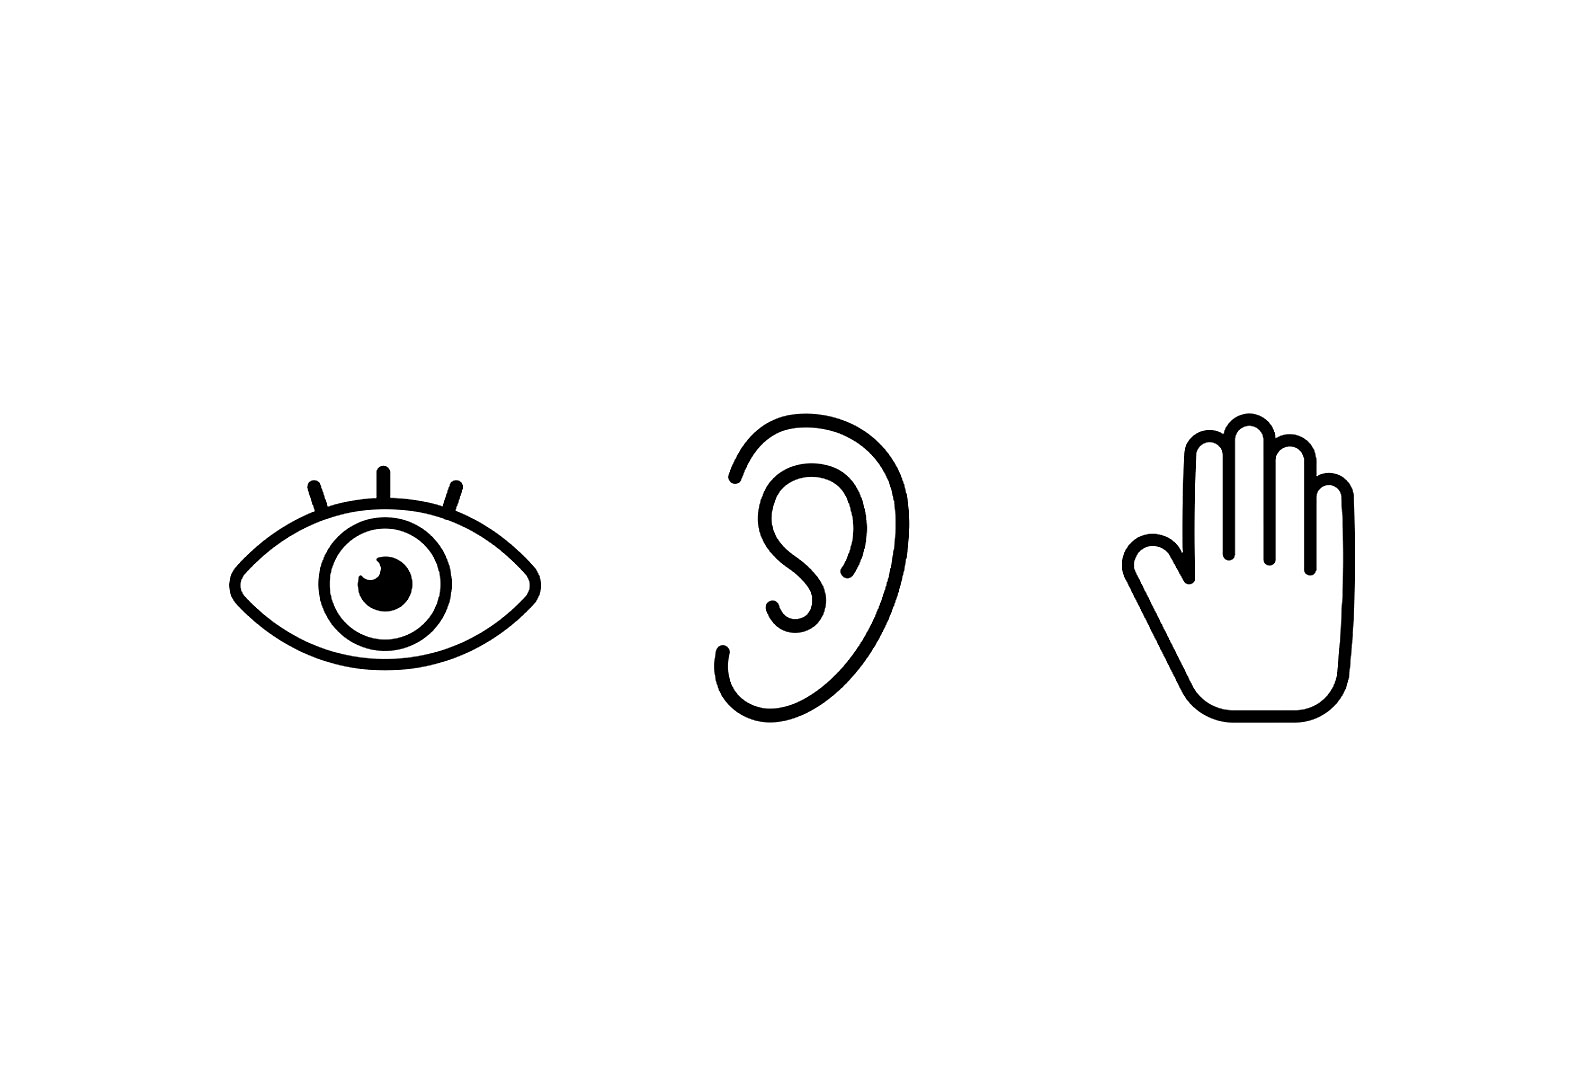 Tři ikony vedle sebe; vlevo se nachází oko, uprostřed ucho a vpravo ruka